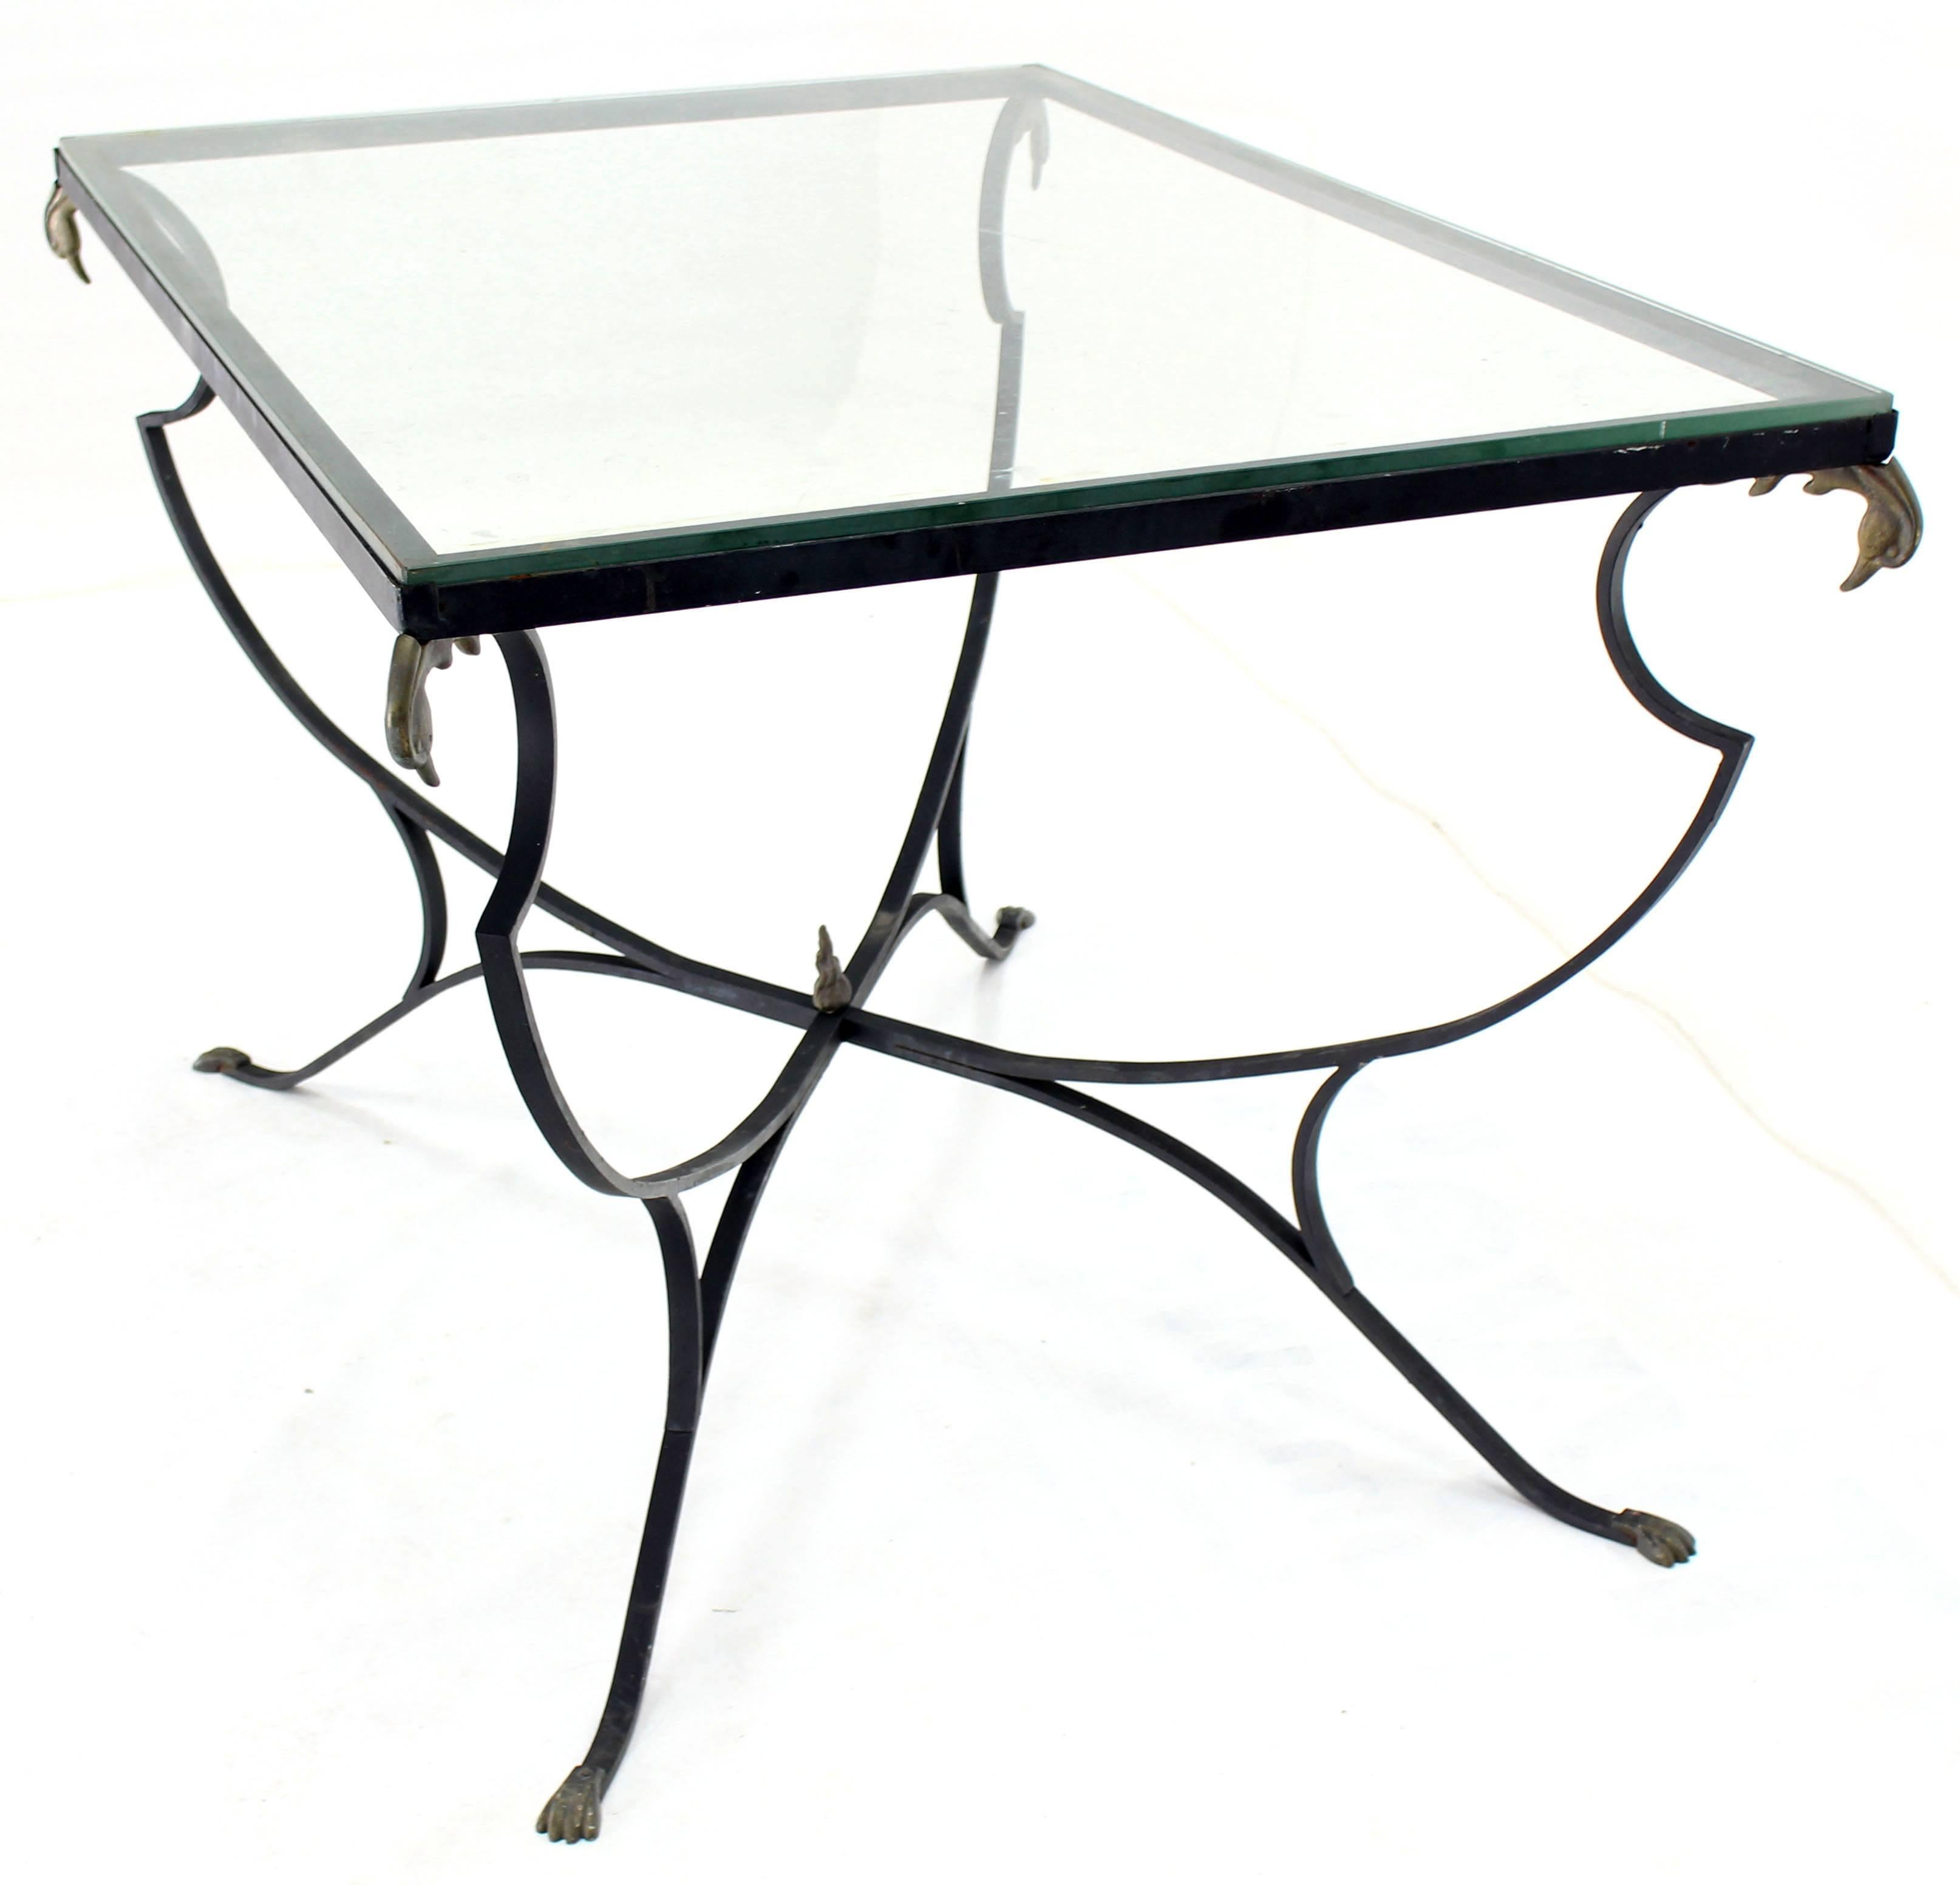 Table de salle à manger en fer forgé à tête de canard en laiton et pieds griffes joliment forgés, avec plateau en verre.